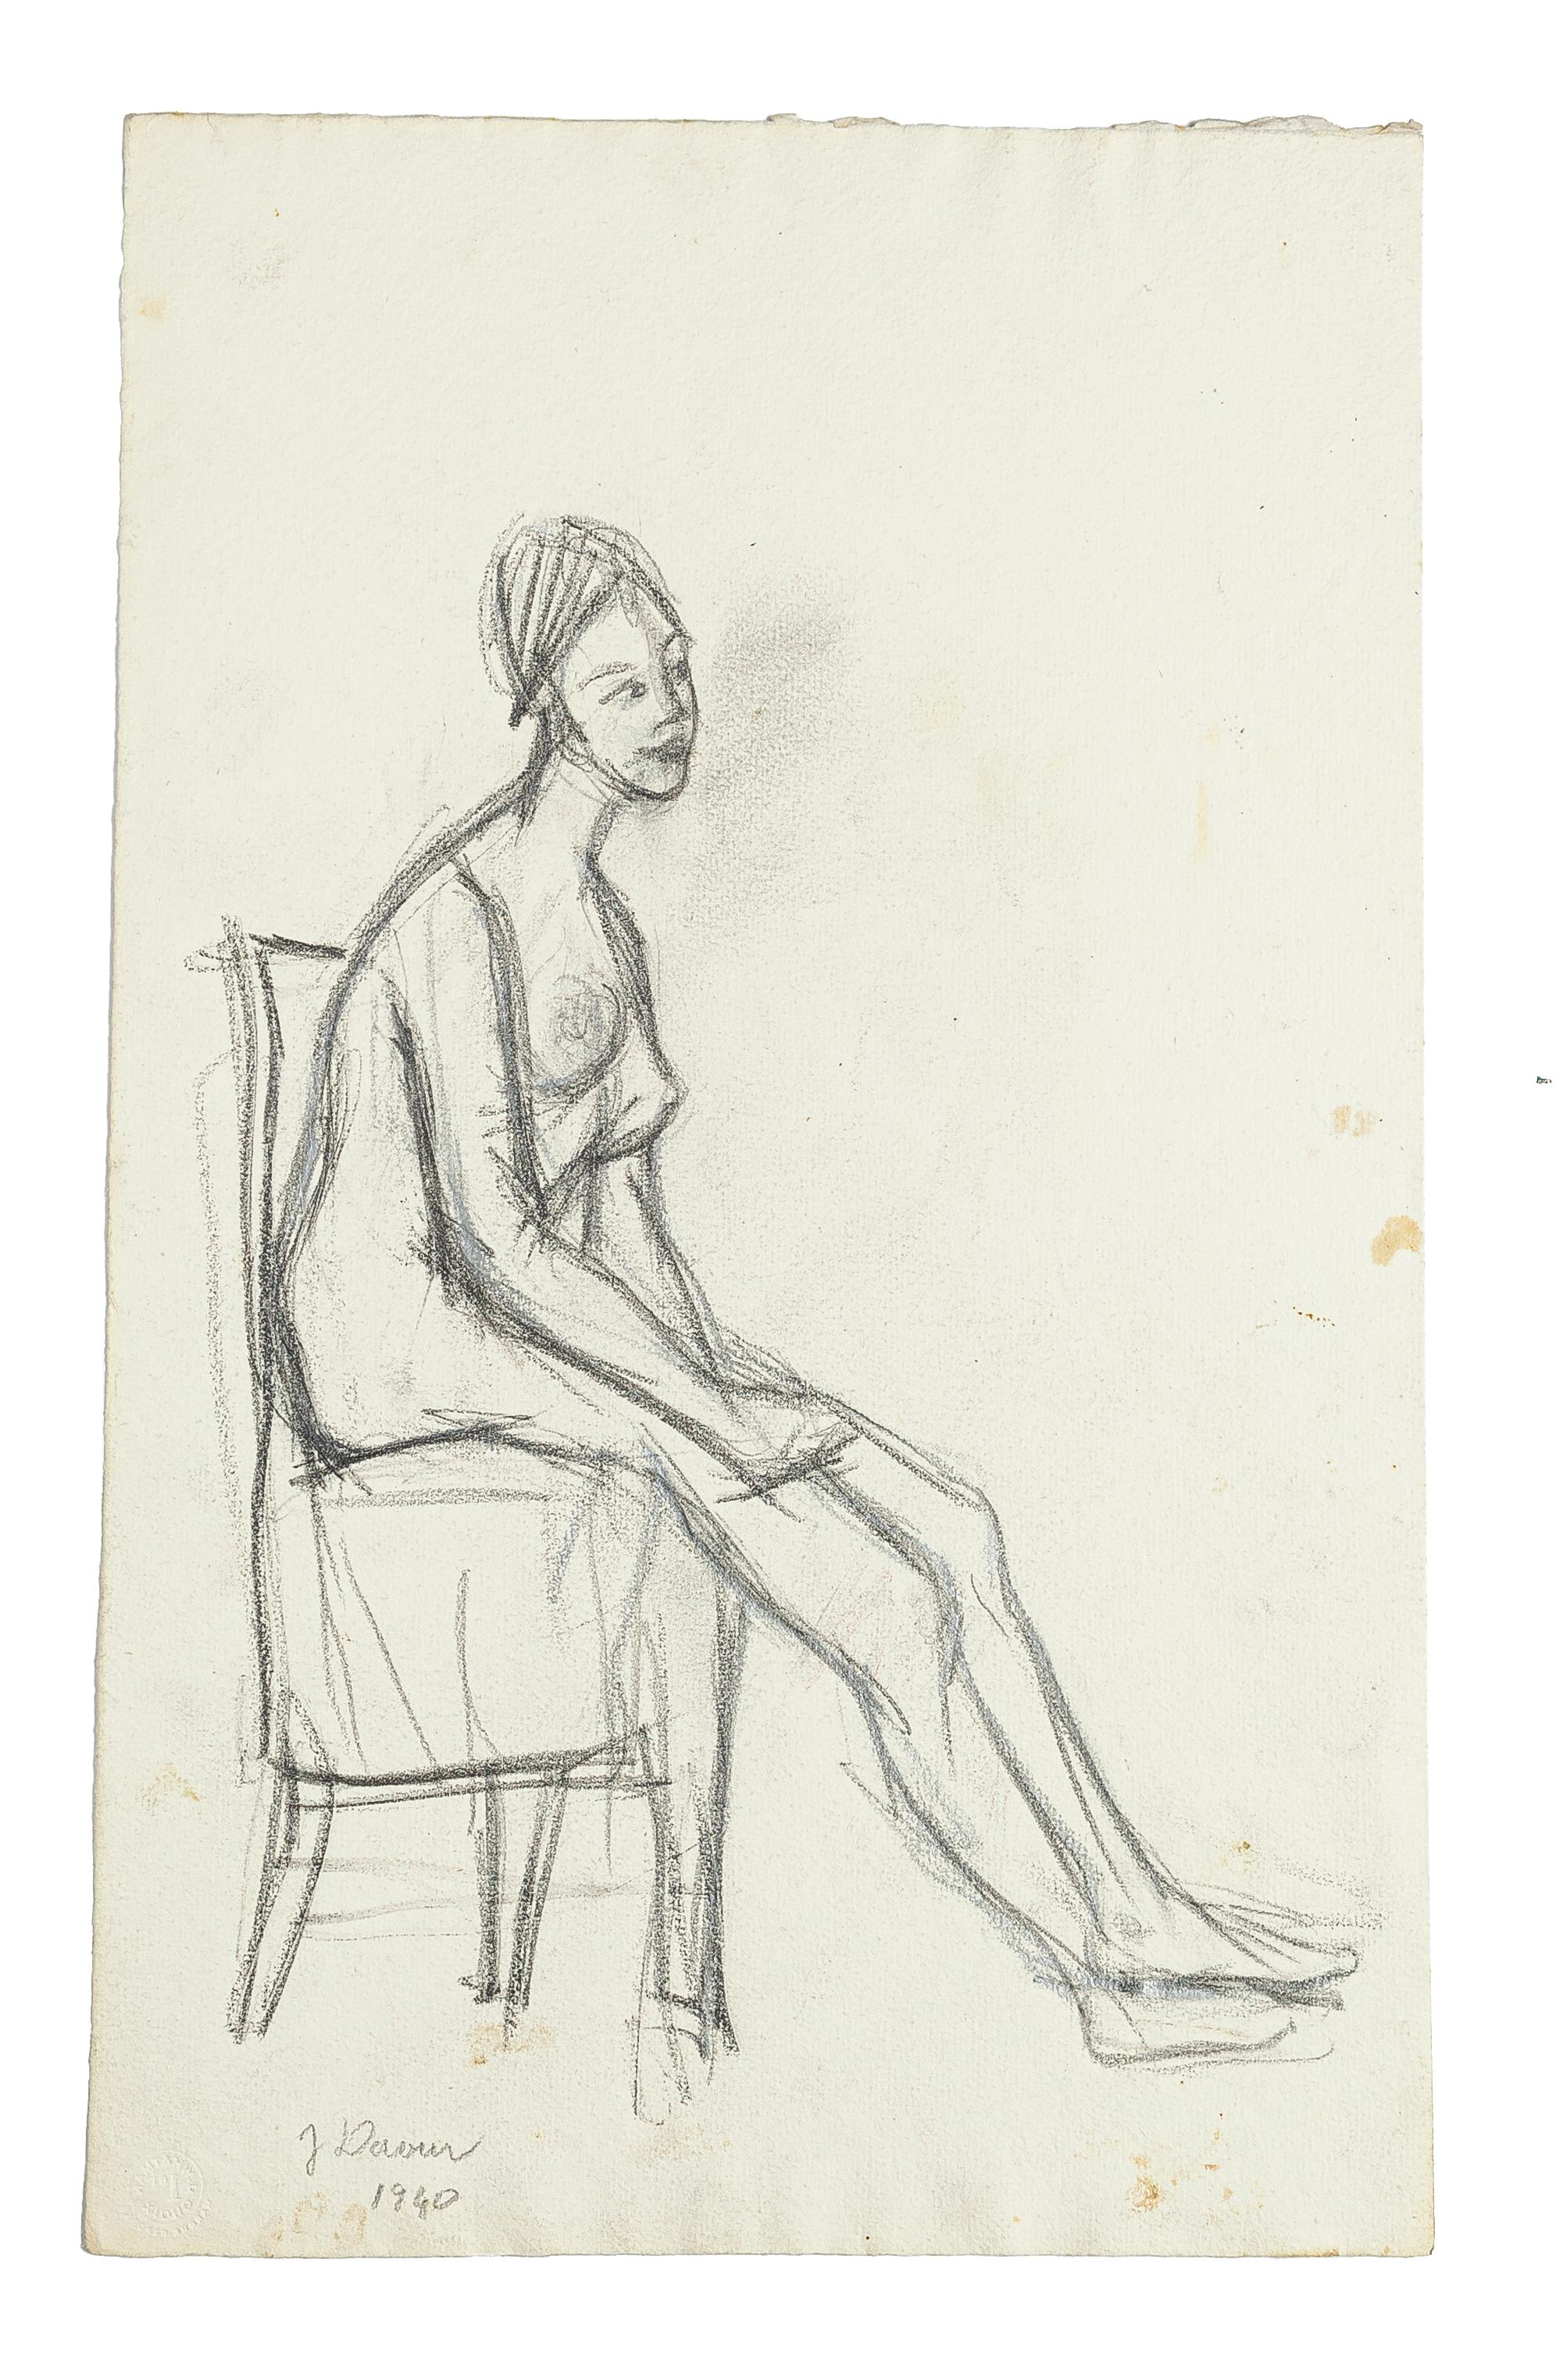 Le dessin original d'un nu au crayon par Jeanne Daour - 1940